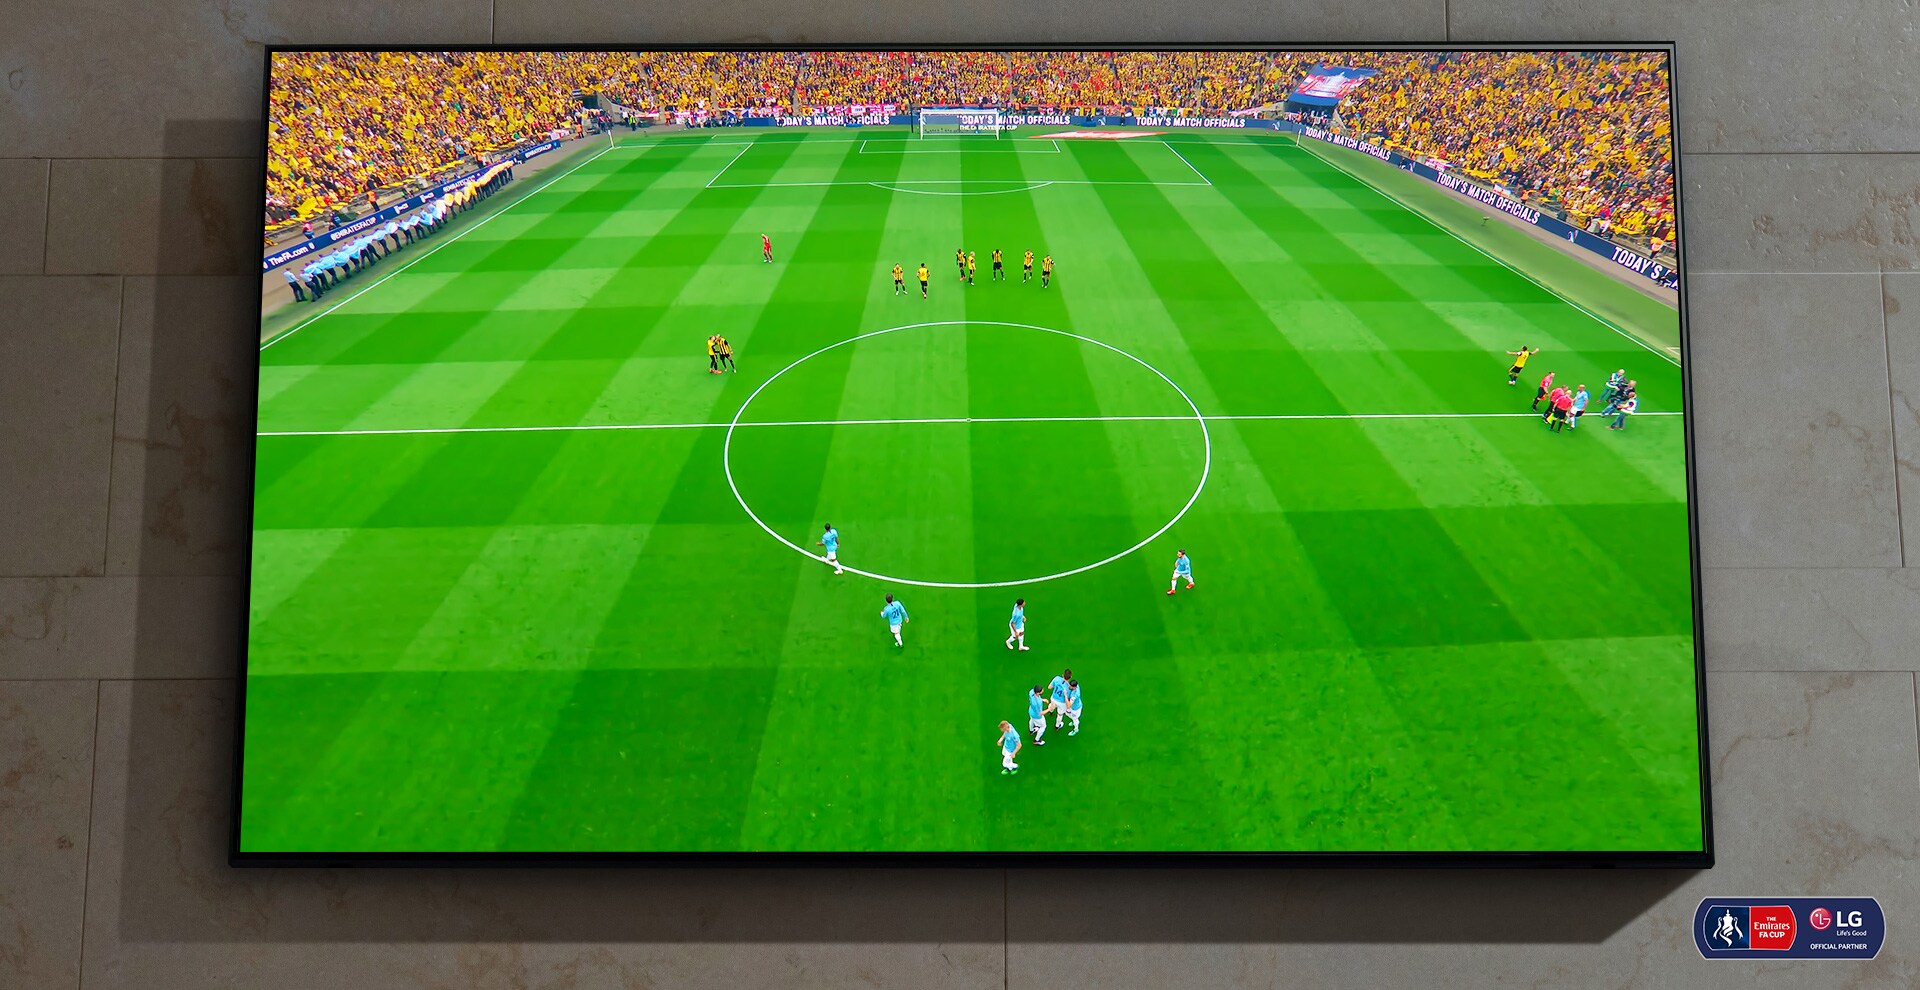 Falra szerelt NanoCell TV. A futballmérkőzés mindjárt kezdődik a képernyőn.